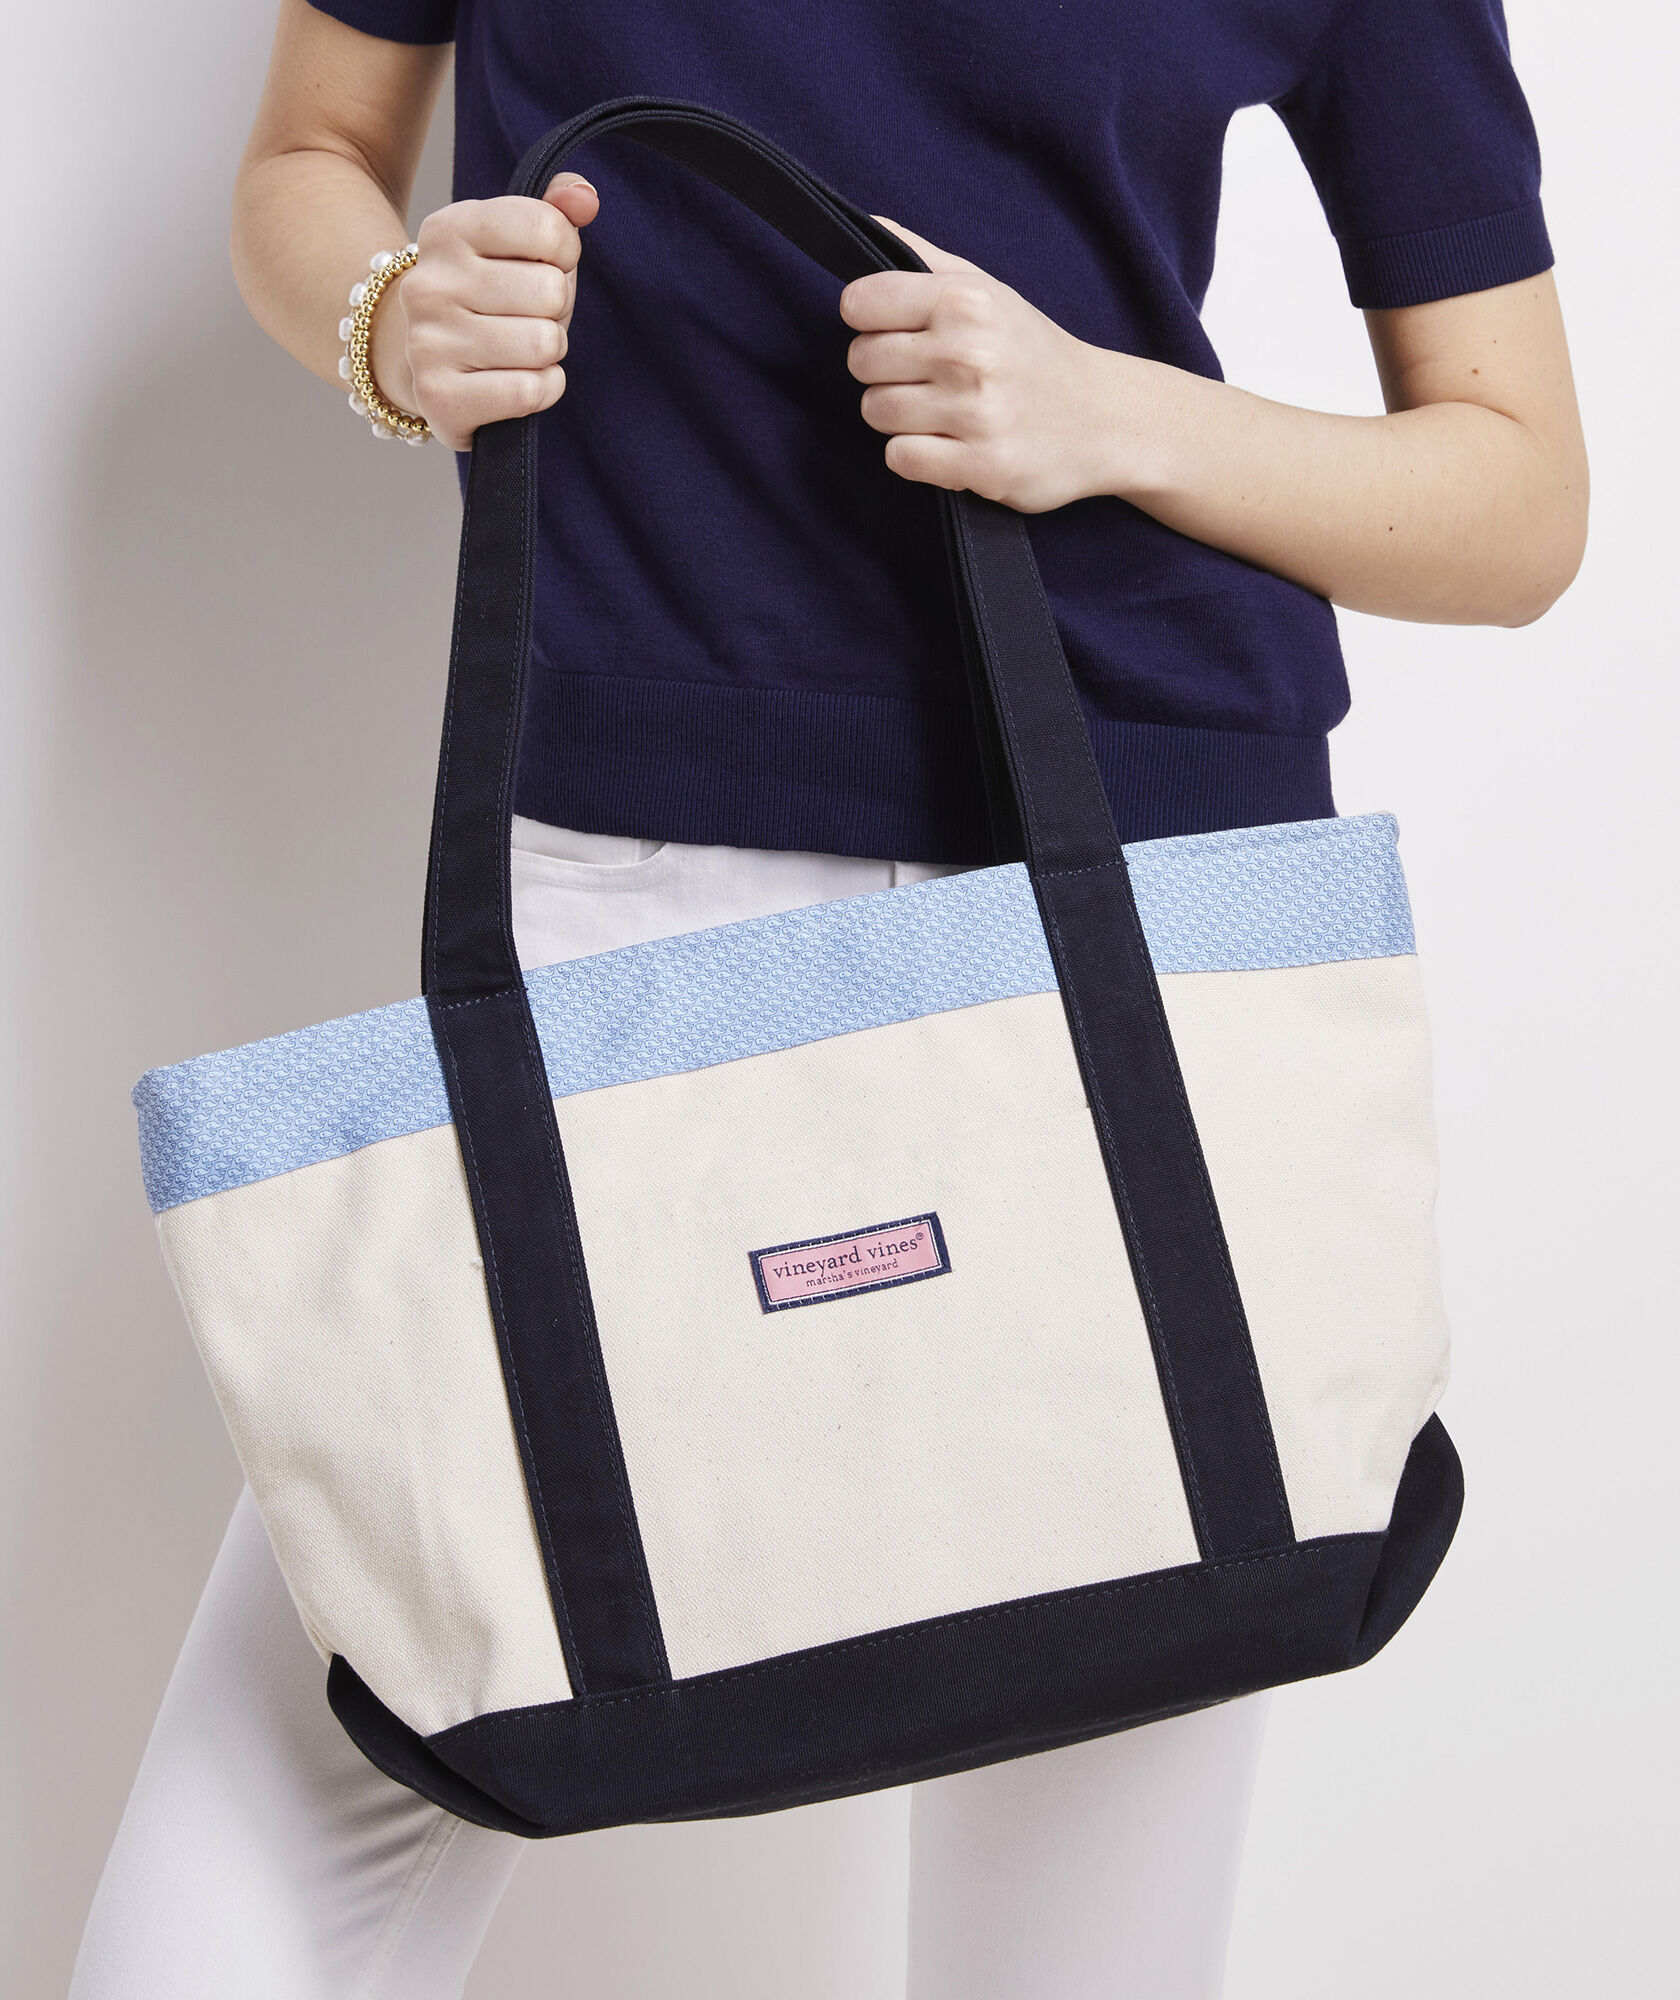 Vineyard Vines by Target Beach Bag - Women's handbags